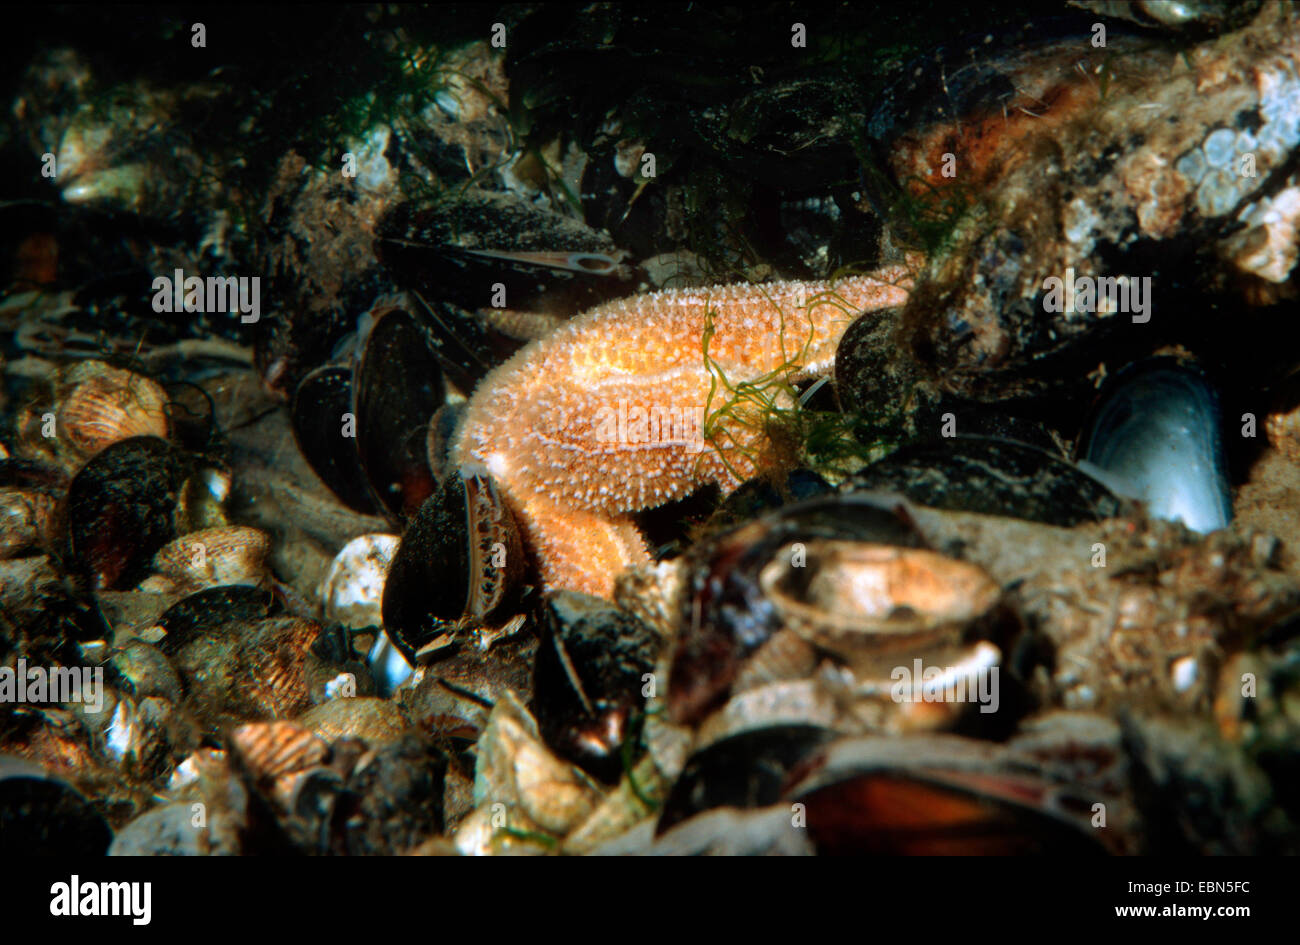 L'étoile de mer commune, politique européenne seastar (Asterias rubens), se nourrissant de moule commune, Allemagne Banque D'Images